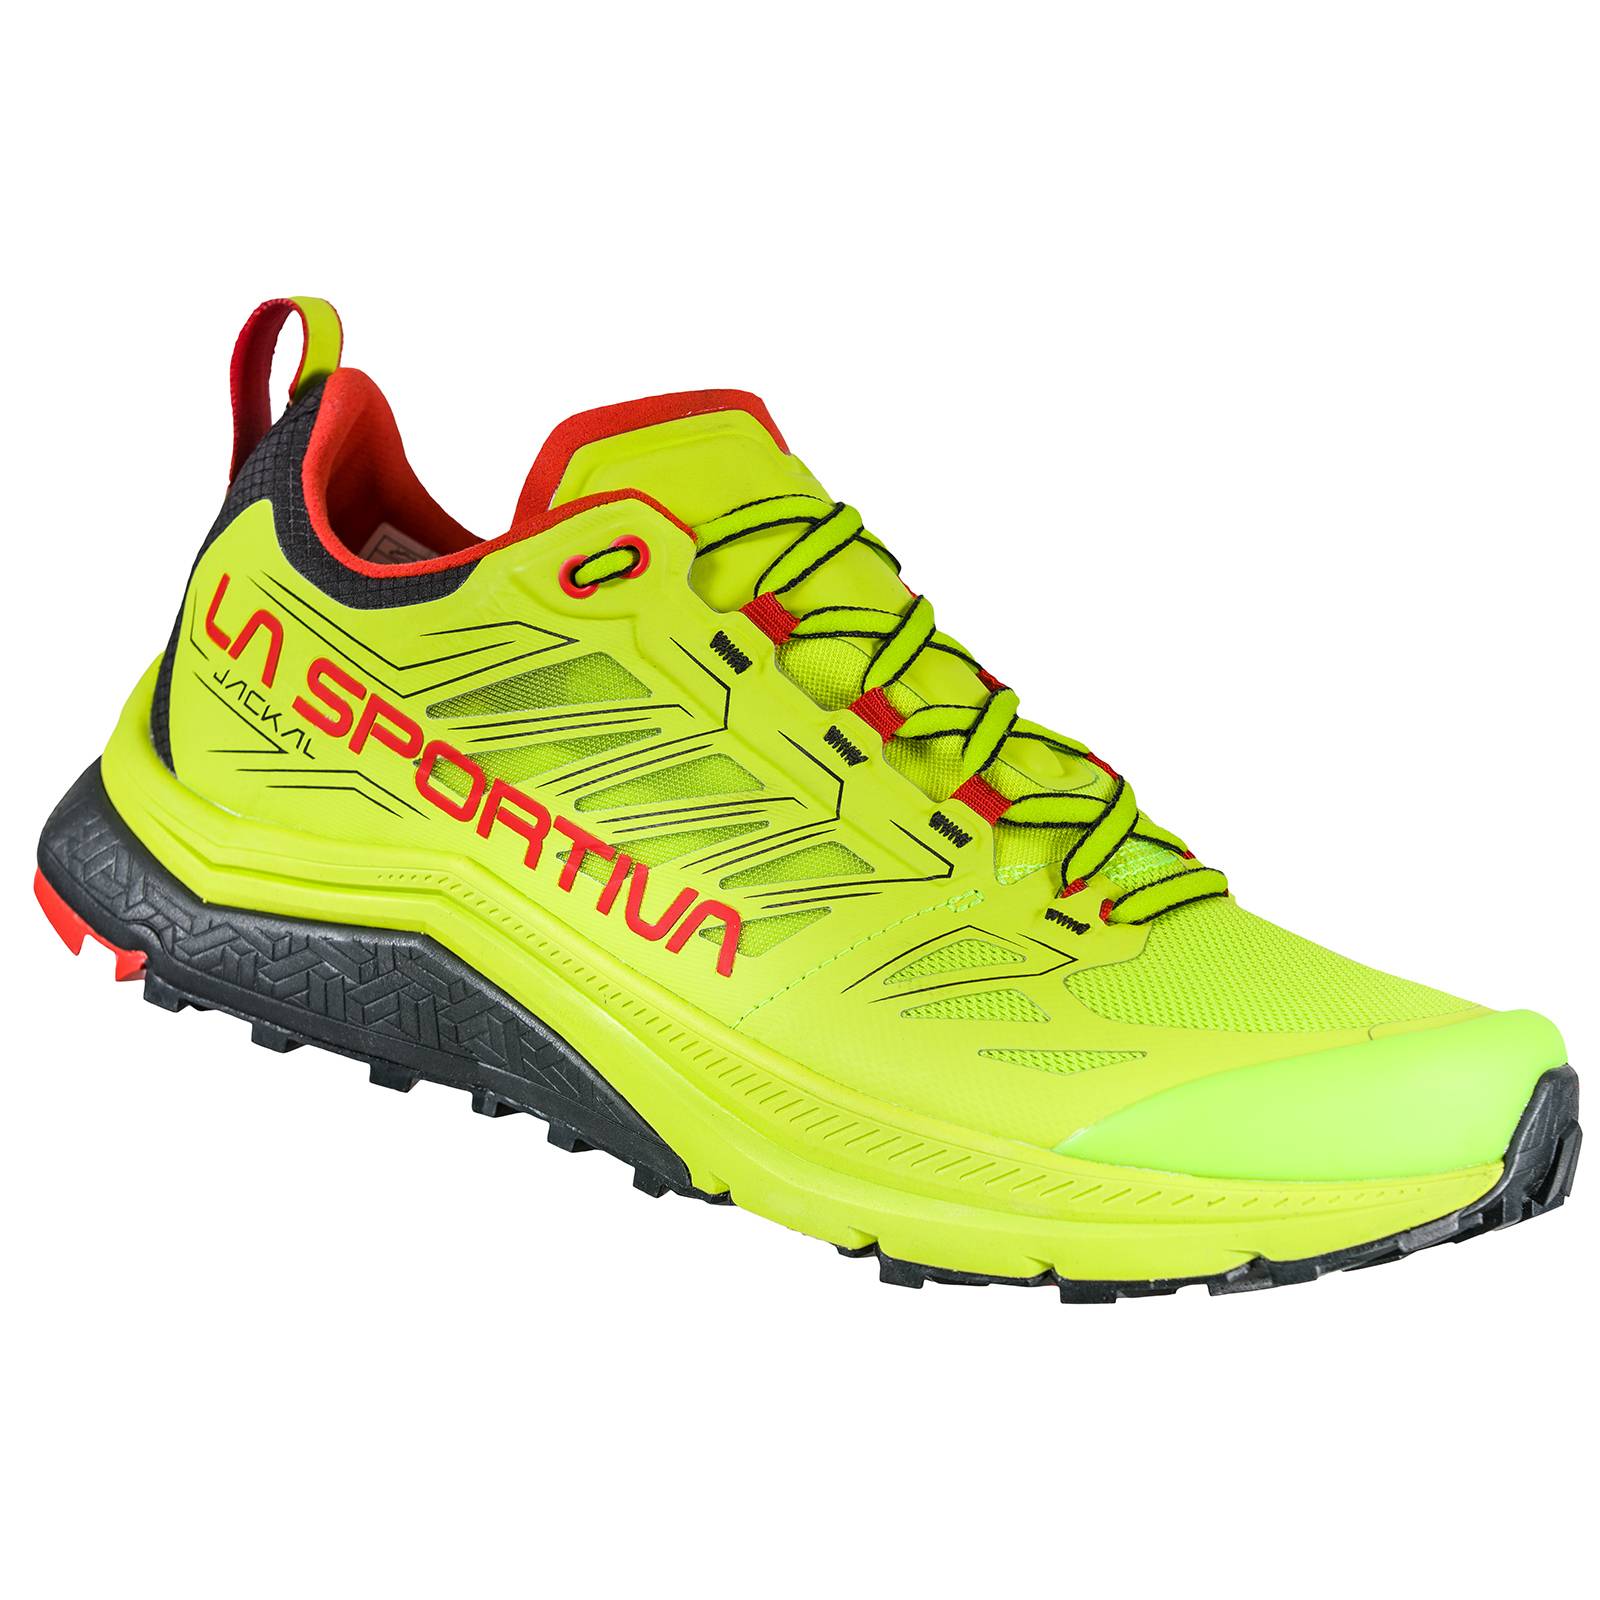 La Sportiva Jackal Trail Running Schuhe gelb